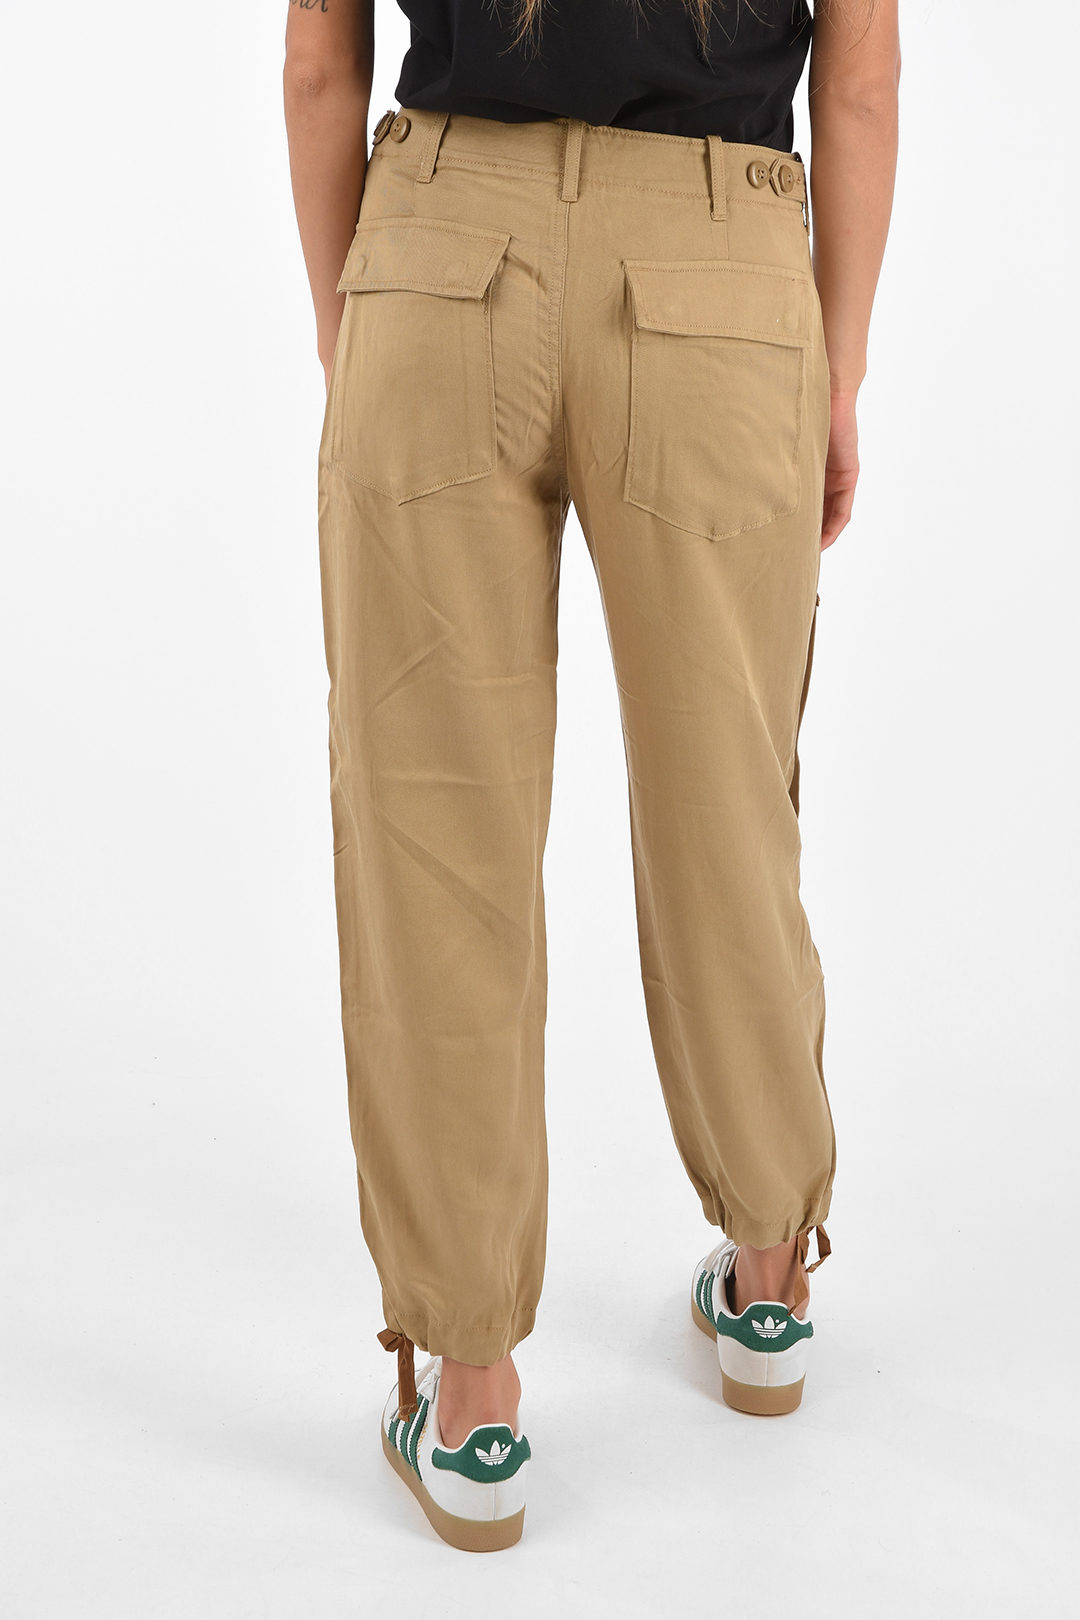 Formal Pants For Ladies | Shop Polo Pants for Women | Polo SA